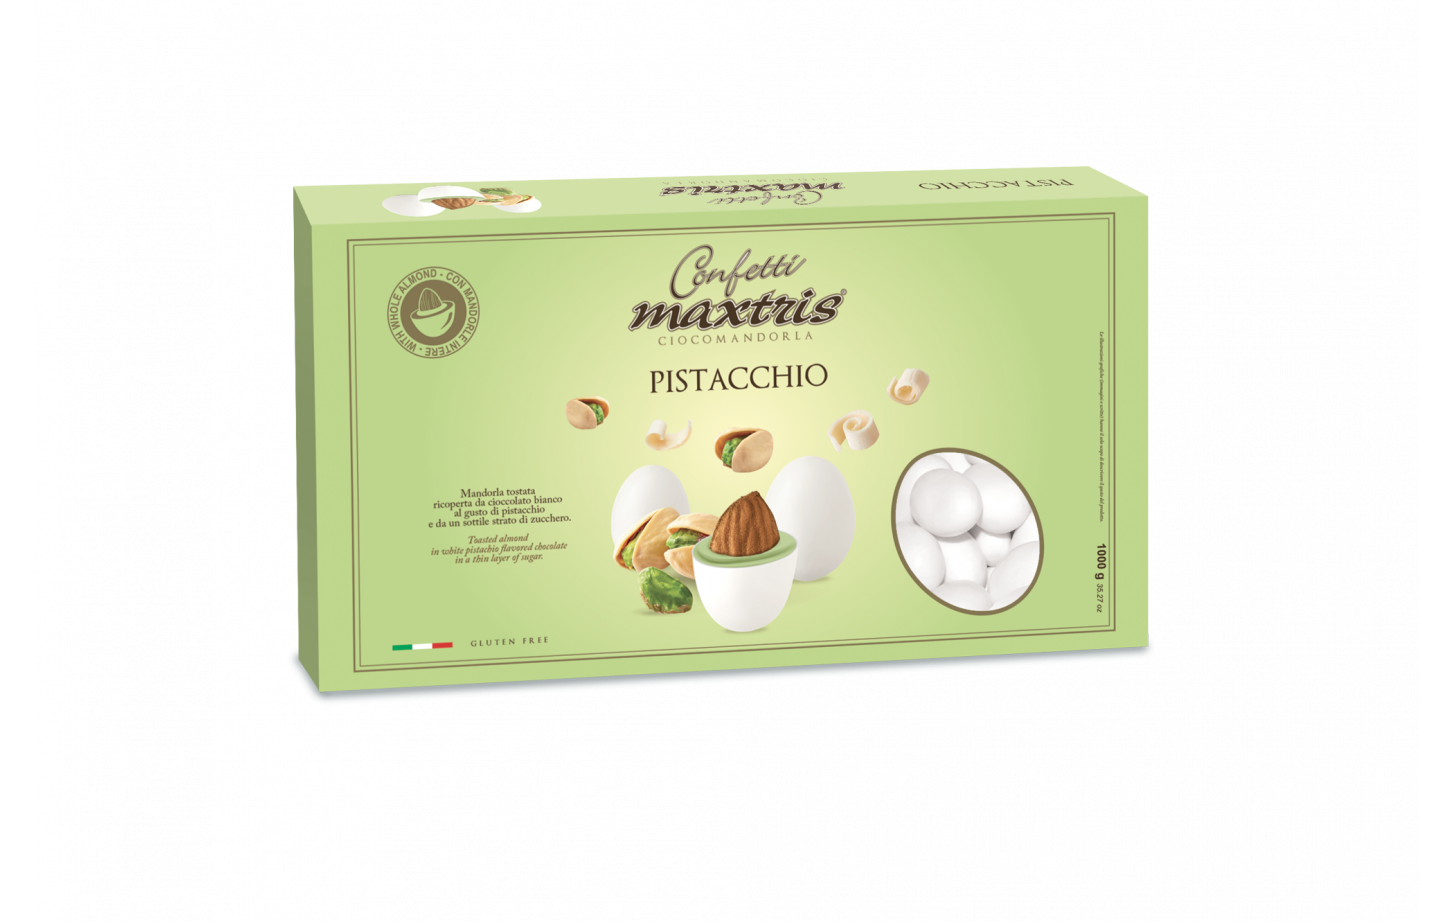 Confetti Maxtris cioccomandorla pistacchio 1 kg